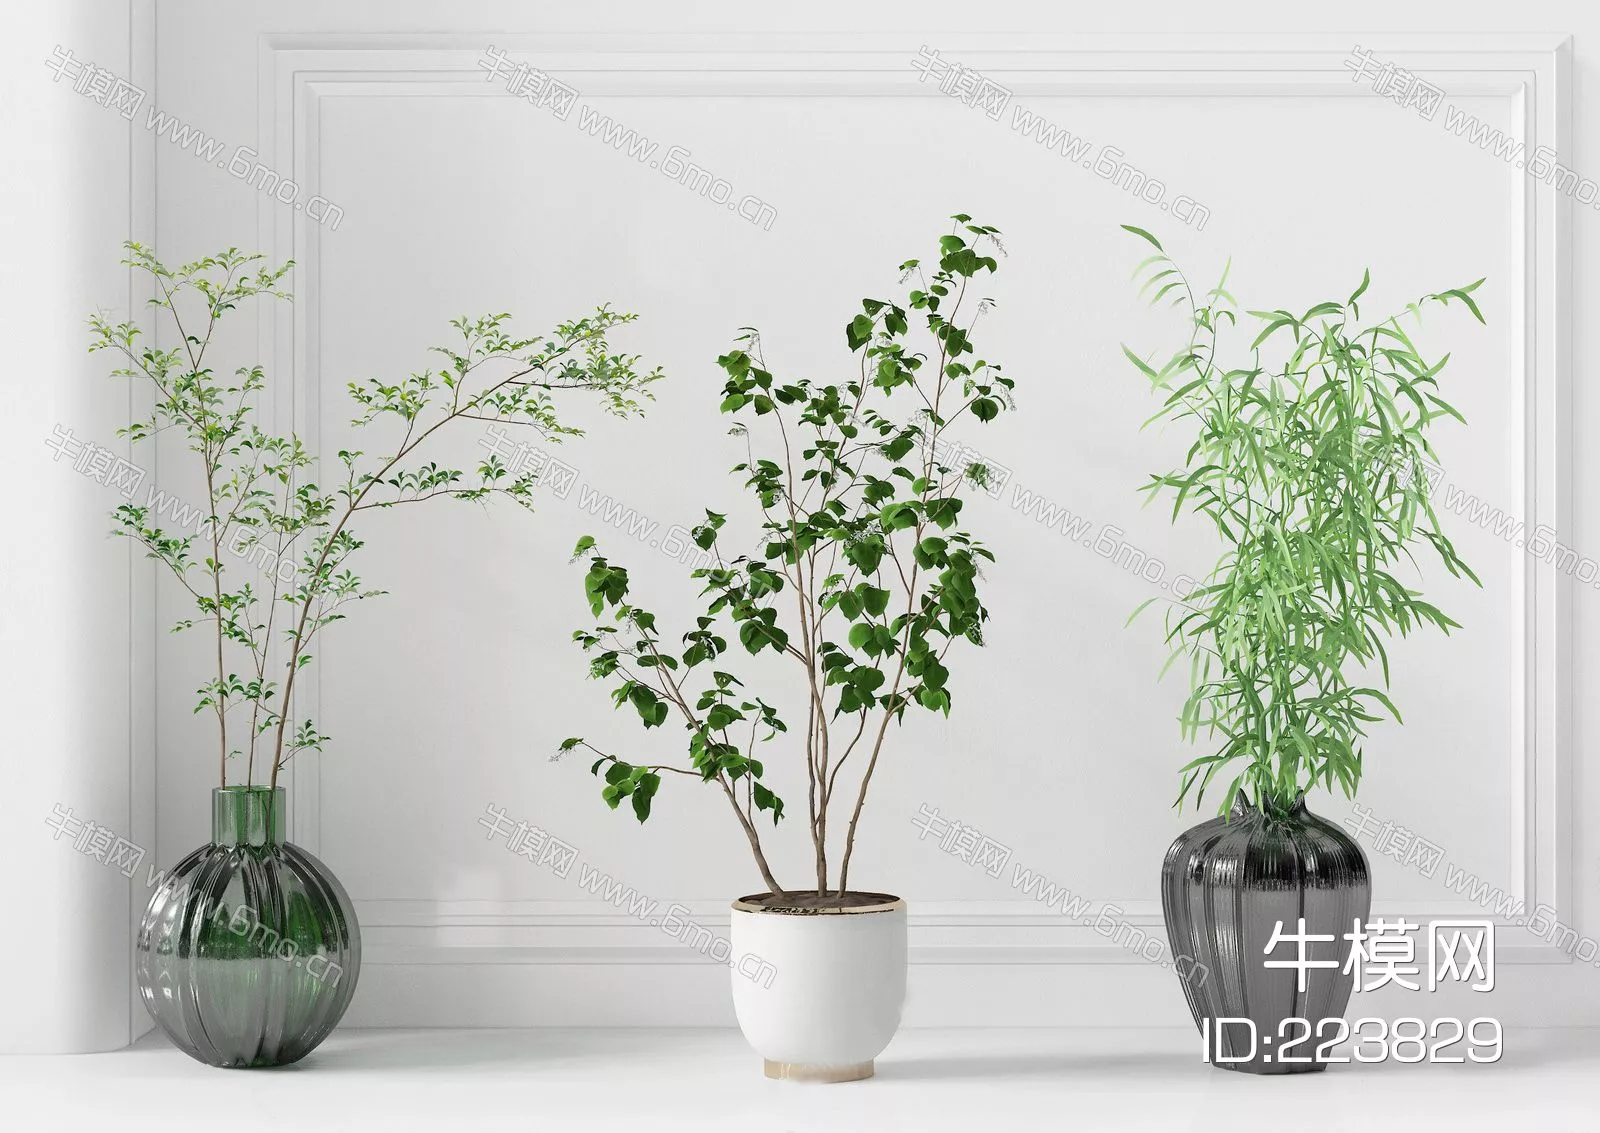 MODERN POTTED PLANT - SKETCHUP 3D MODEL - ENSCAPE - 223829